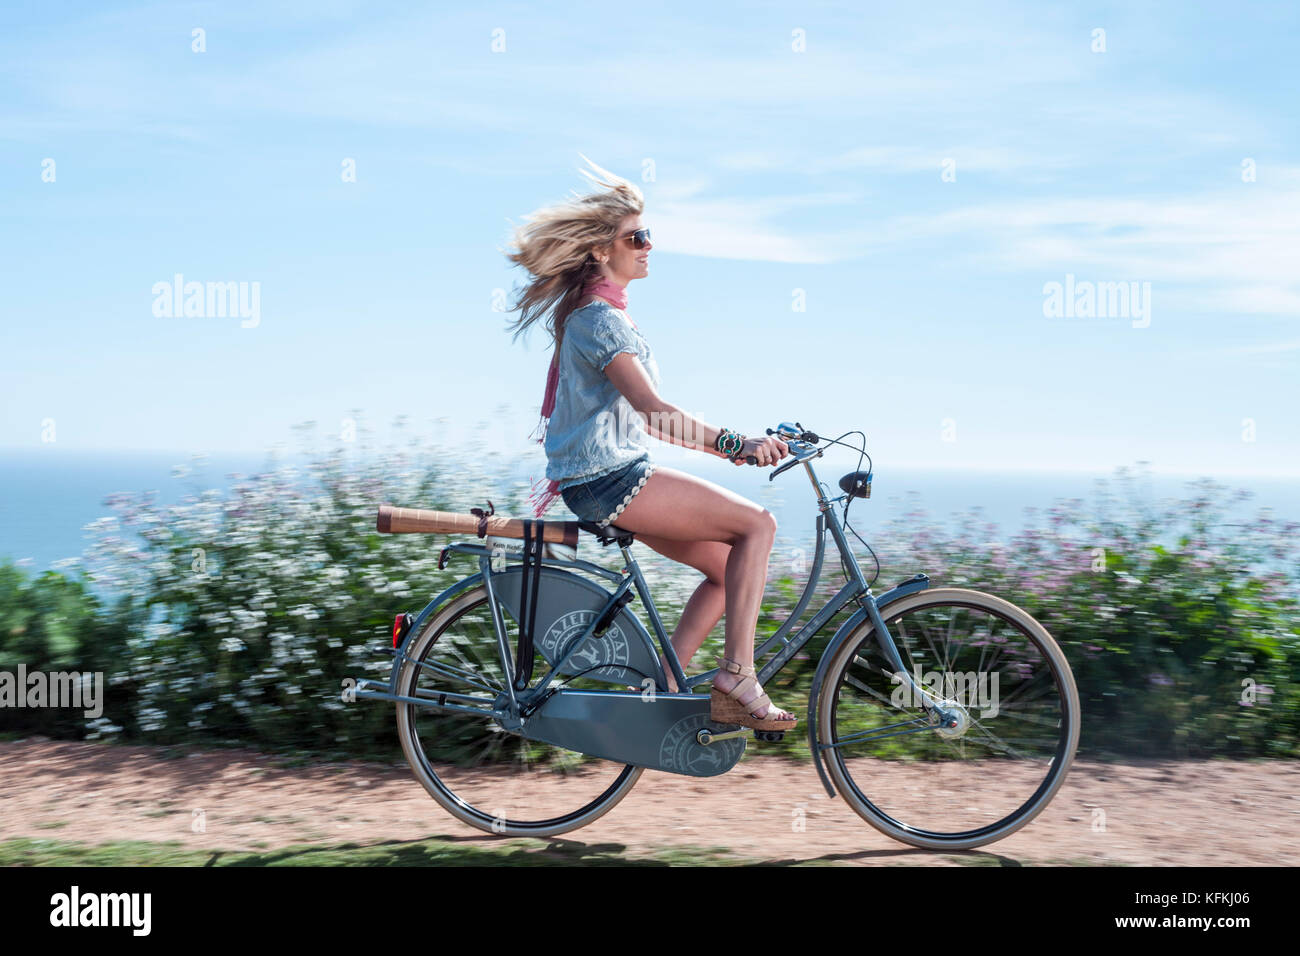 Los Angeles, Ca - 11. Juli: Frau reitet ein Fahrrad auf einem Pfad mit Blick auf den Ozean in Los Angeles, Kalifornien am 30. März 2011. Stockfoto